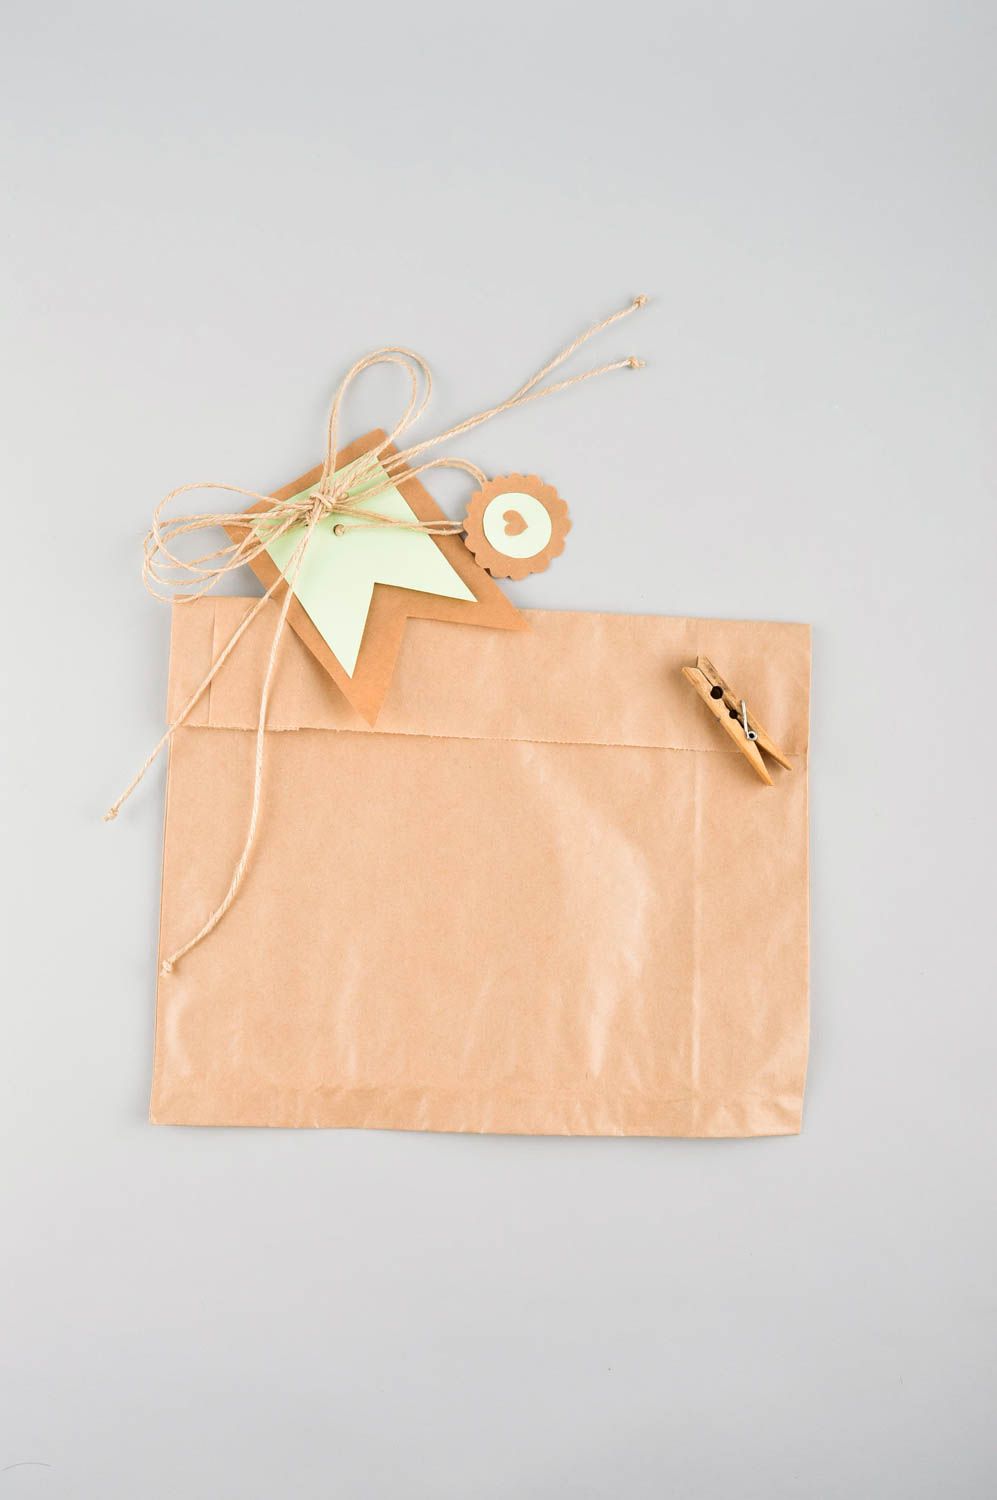 Handmade Verpackung für Geldgeschenke kreative Geschenkidee Geschenk Umschlag foto 3